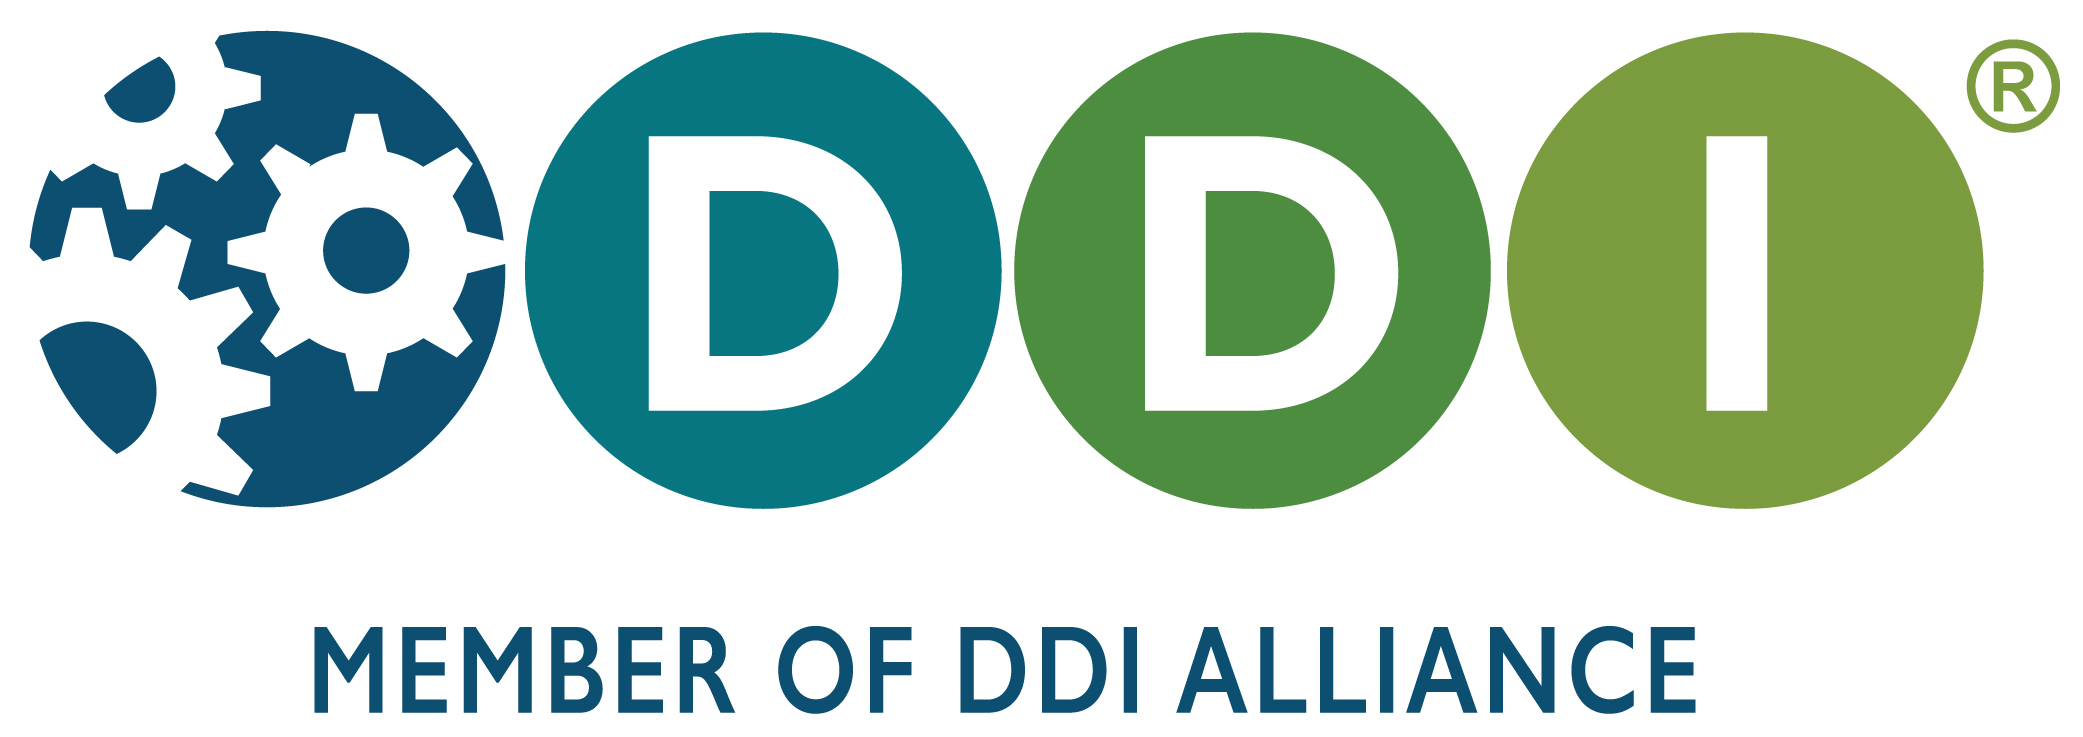 DDI Logo with Tagline 3 -- "Member of DDI Alliance"